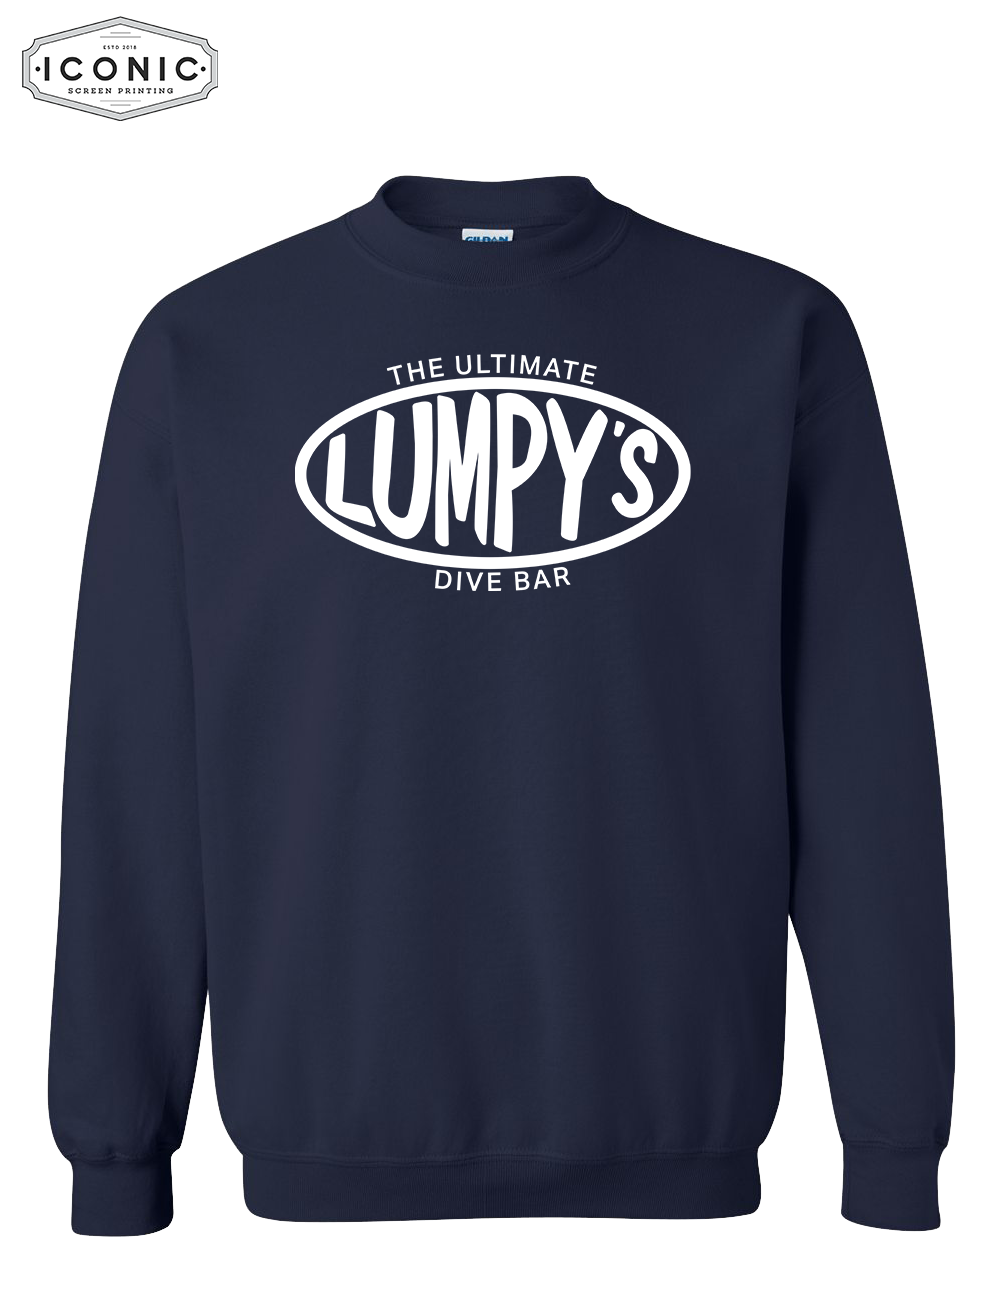 LUMPY'S Dive Bar - D5 - Heavy Blend Sweatshirt